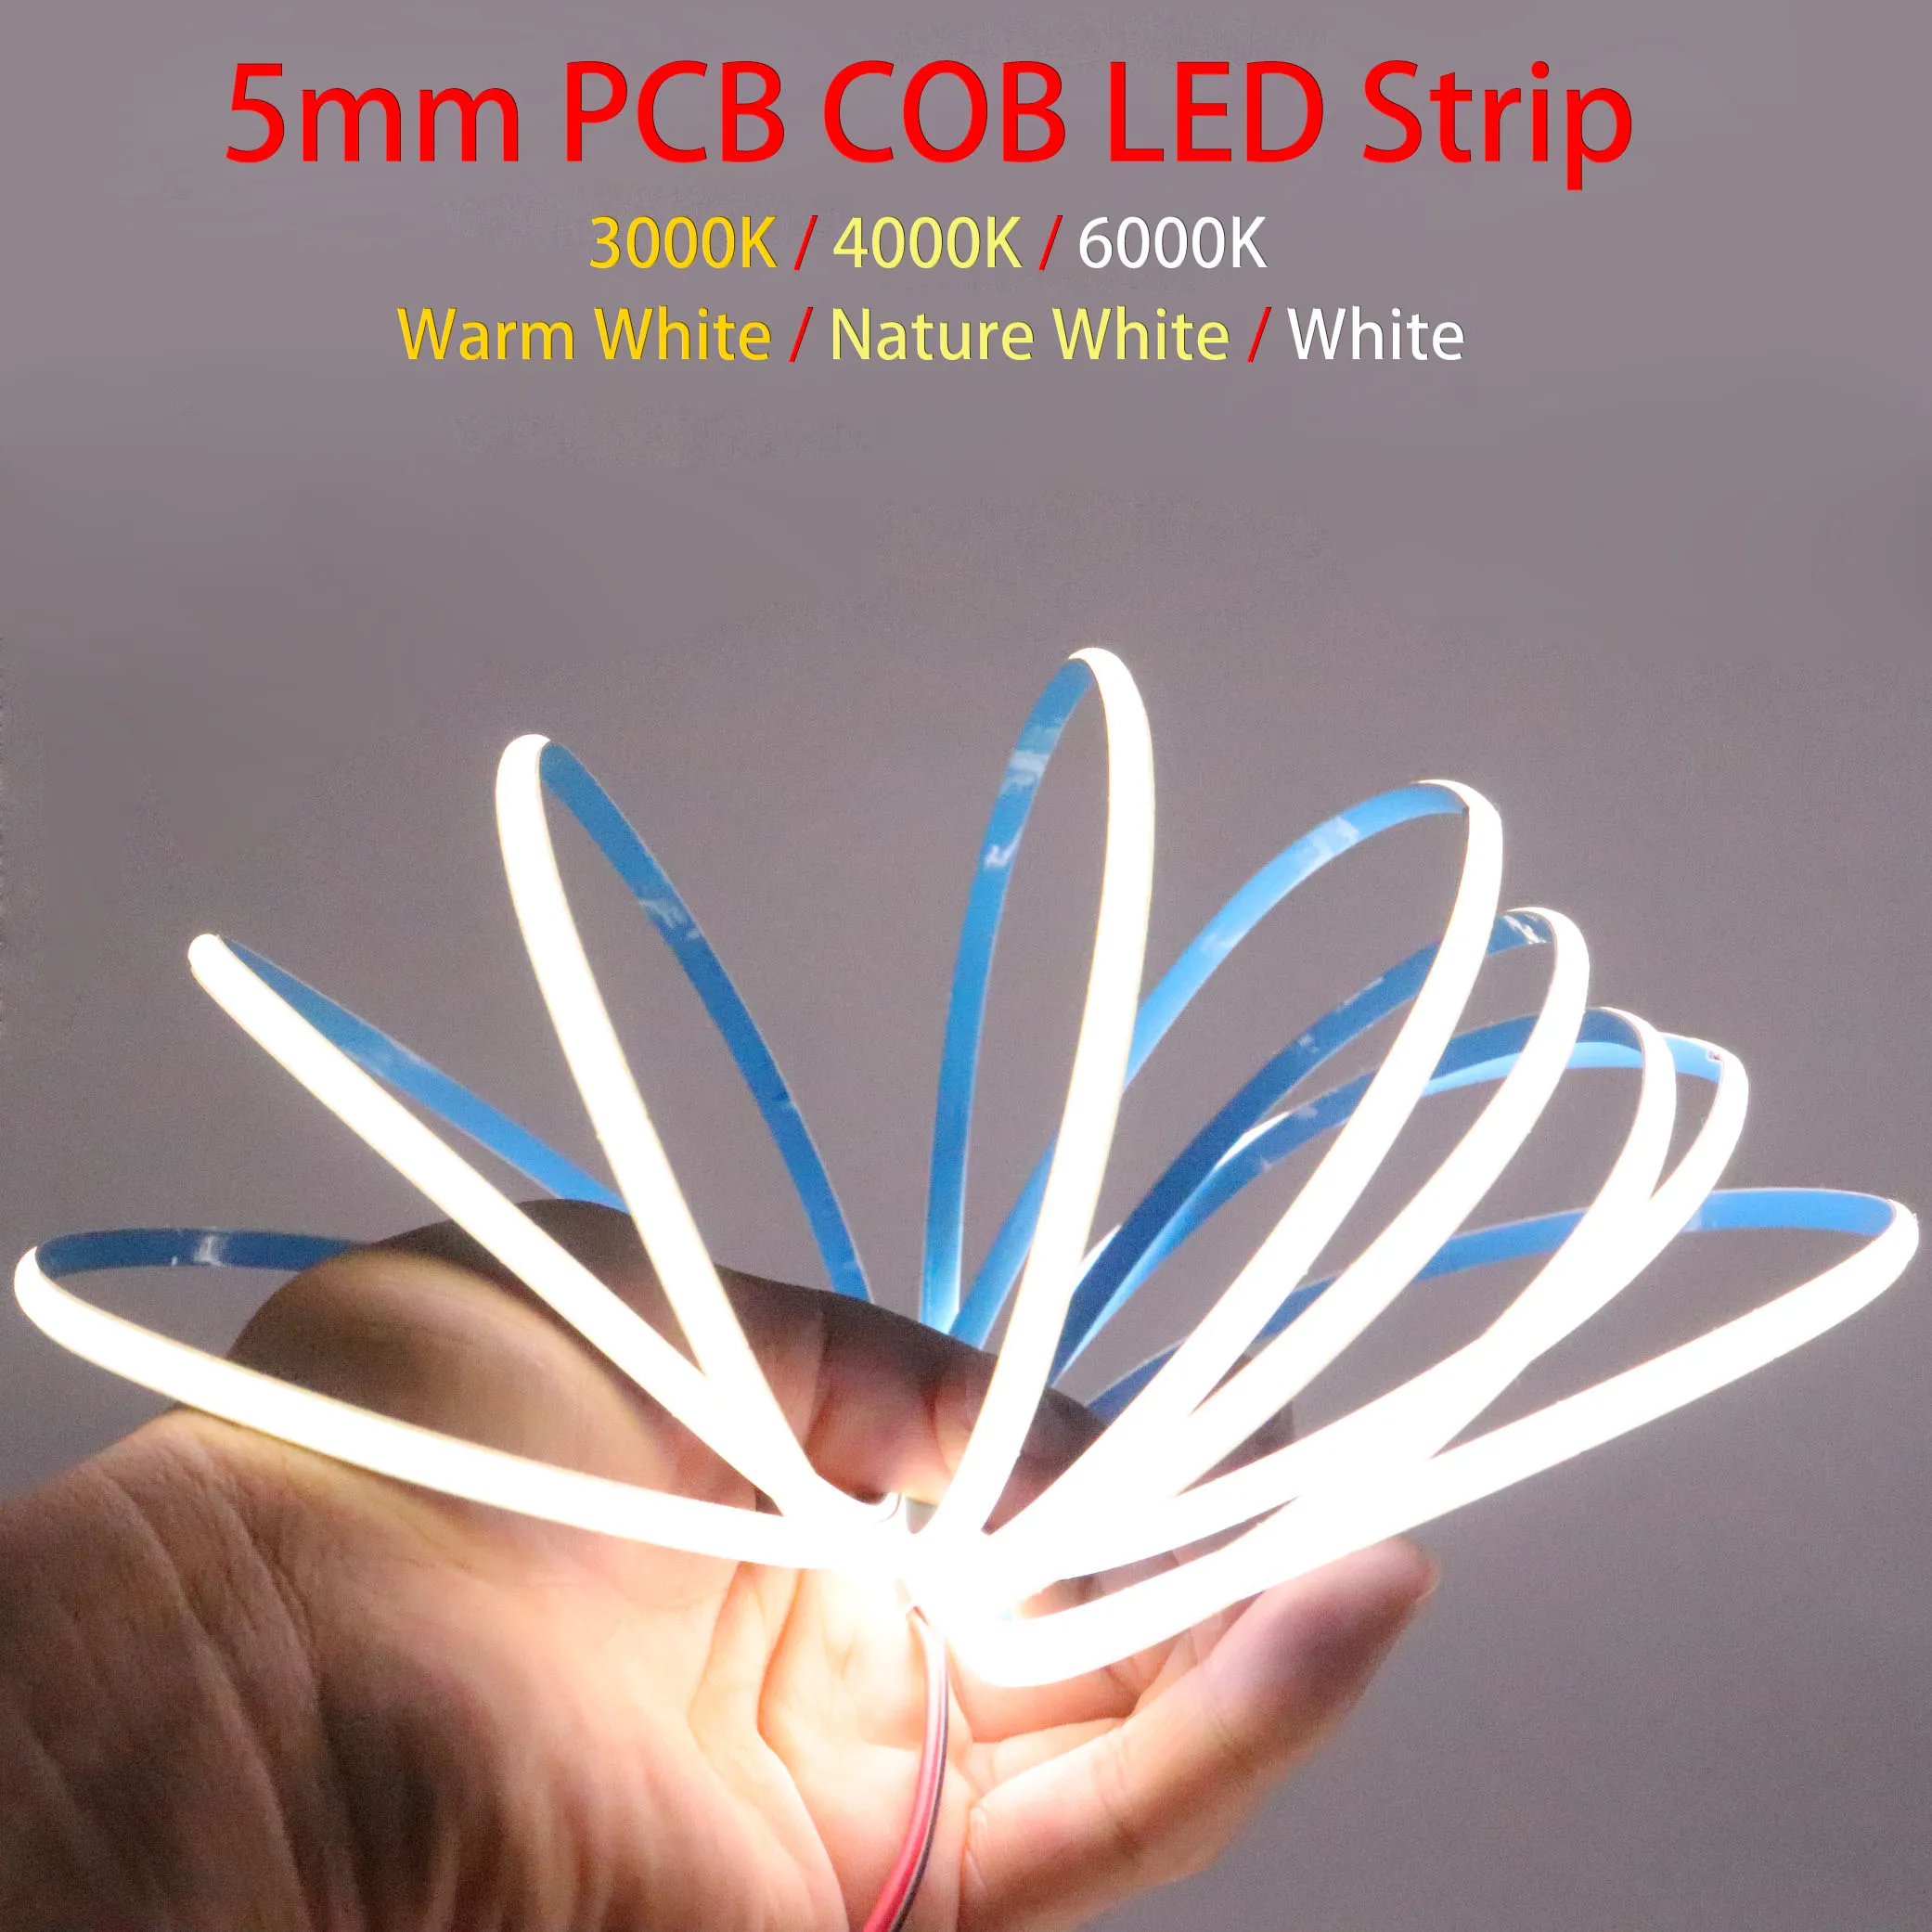 Superdünner 5 mm COB-LED-Streifen, 384 LEDs/m, weich, flexibel, DC12 V/24 V, Lichtleiste, warm-kaltweiß, für Dekorbeleuchtung, 3000 K, 4000 K, 6000 K